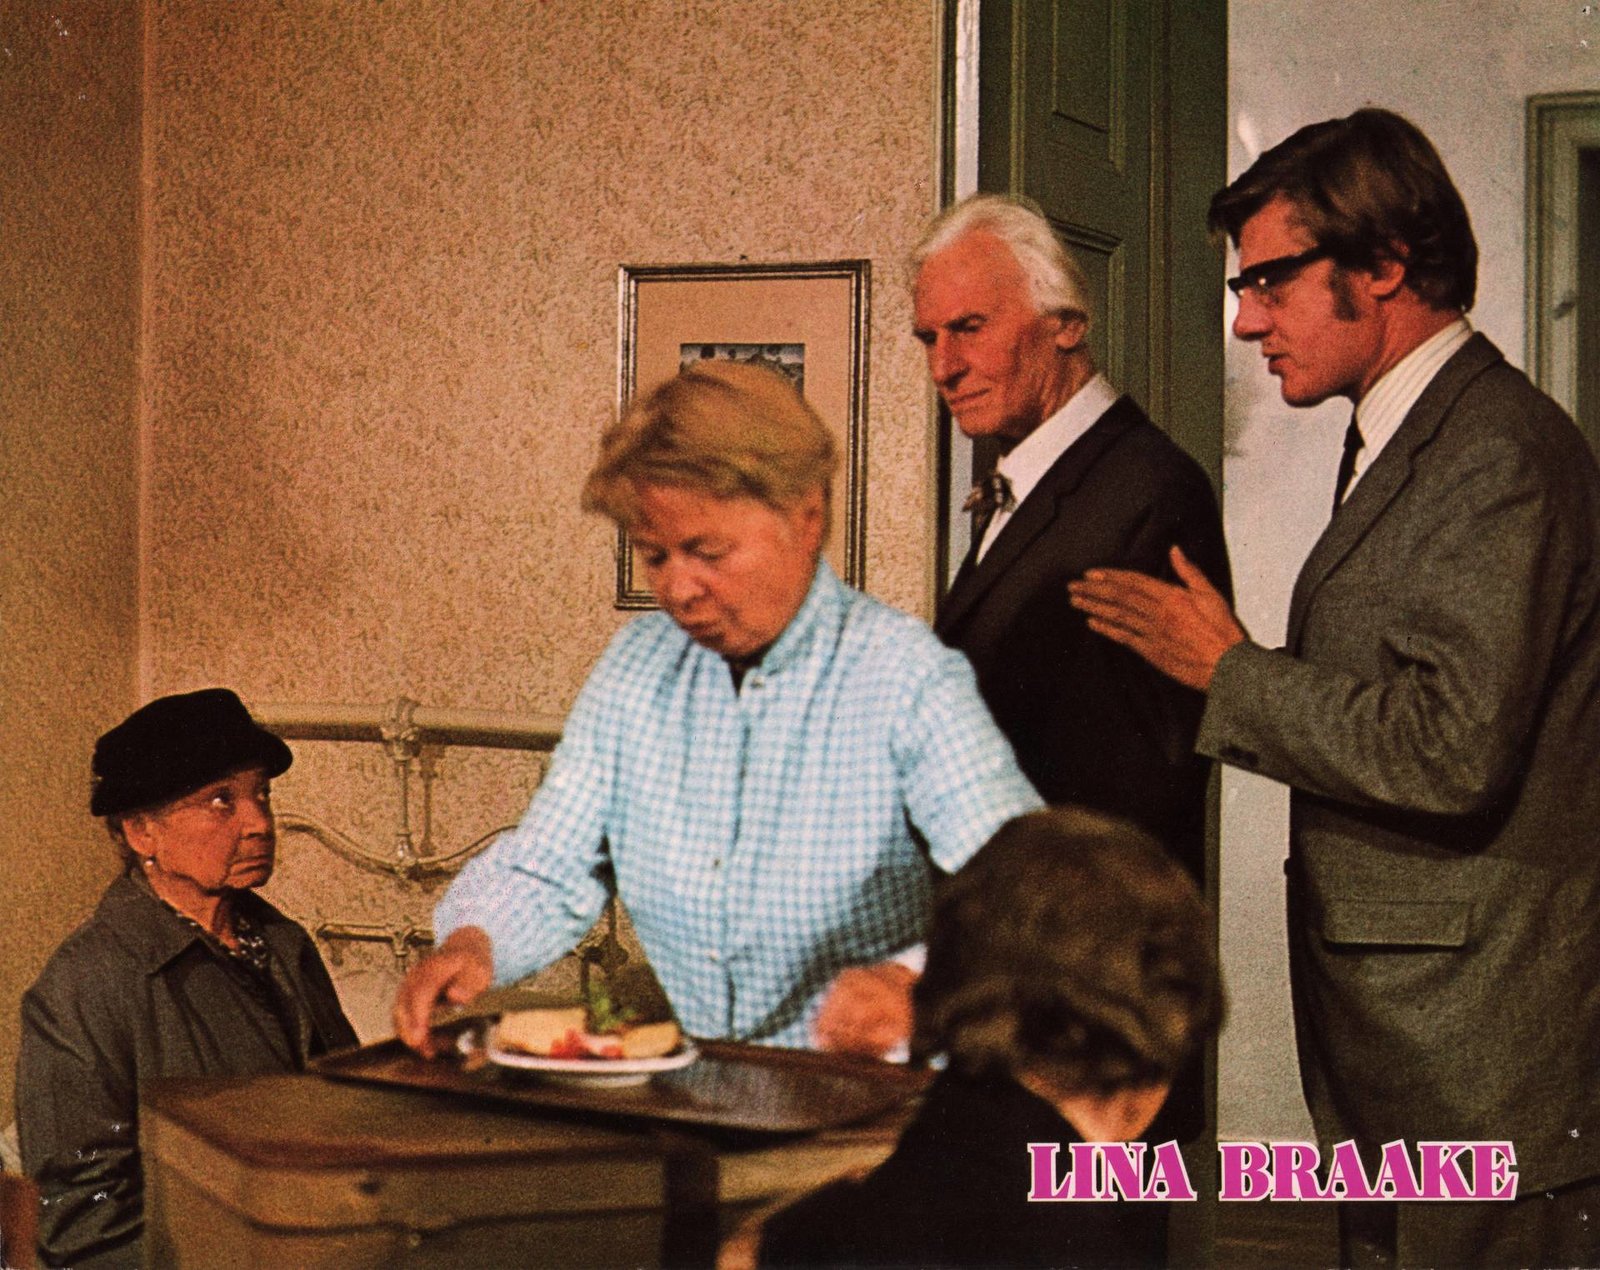 Lina Braake oder Die Interessen der Bank können nicht die Interessen sein, die Lina Braake hat (Filmjuwelen)  (DVD)